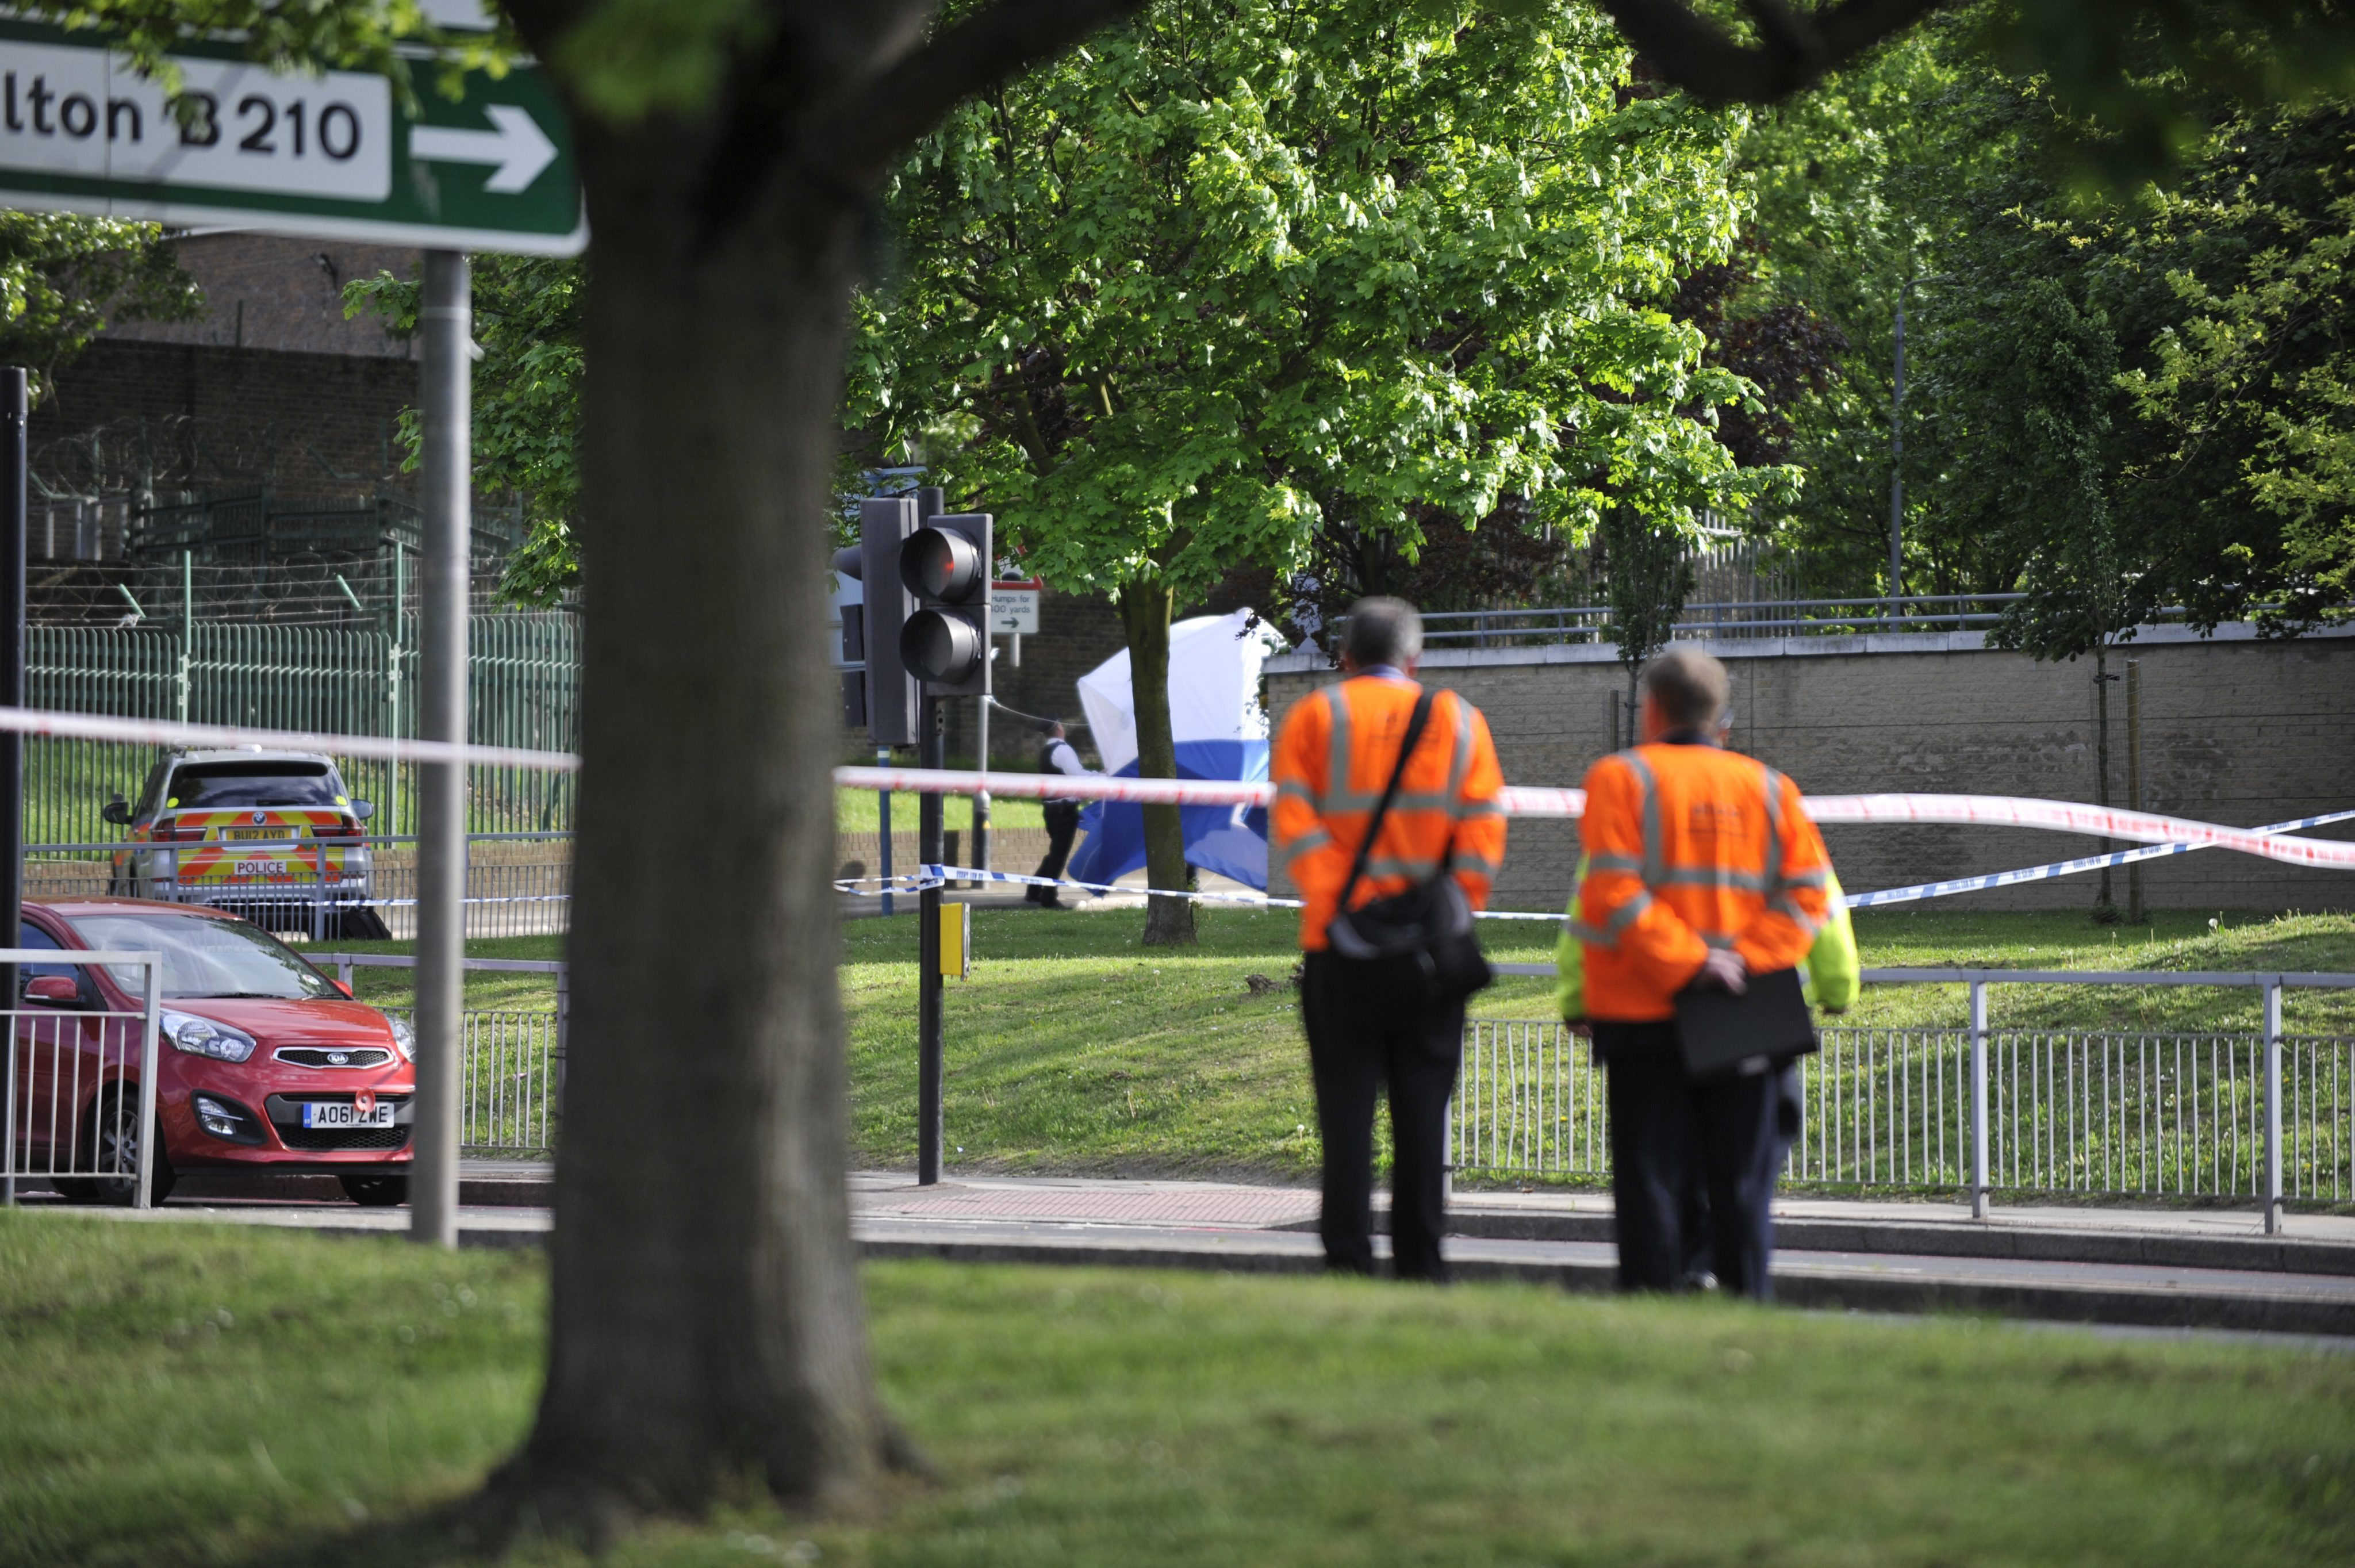 Un ataque a un soldado al sur de Londres causa alarma en el Reino Unido